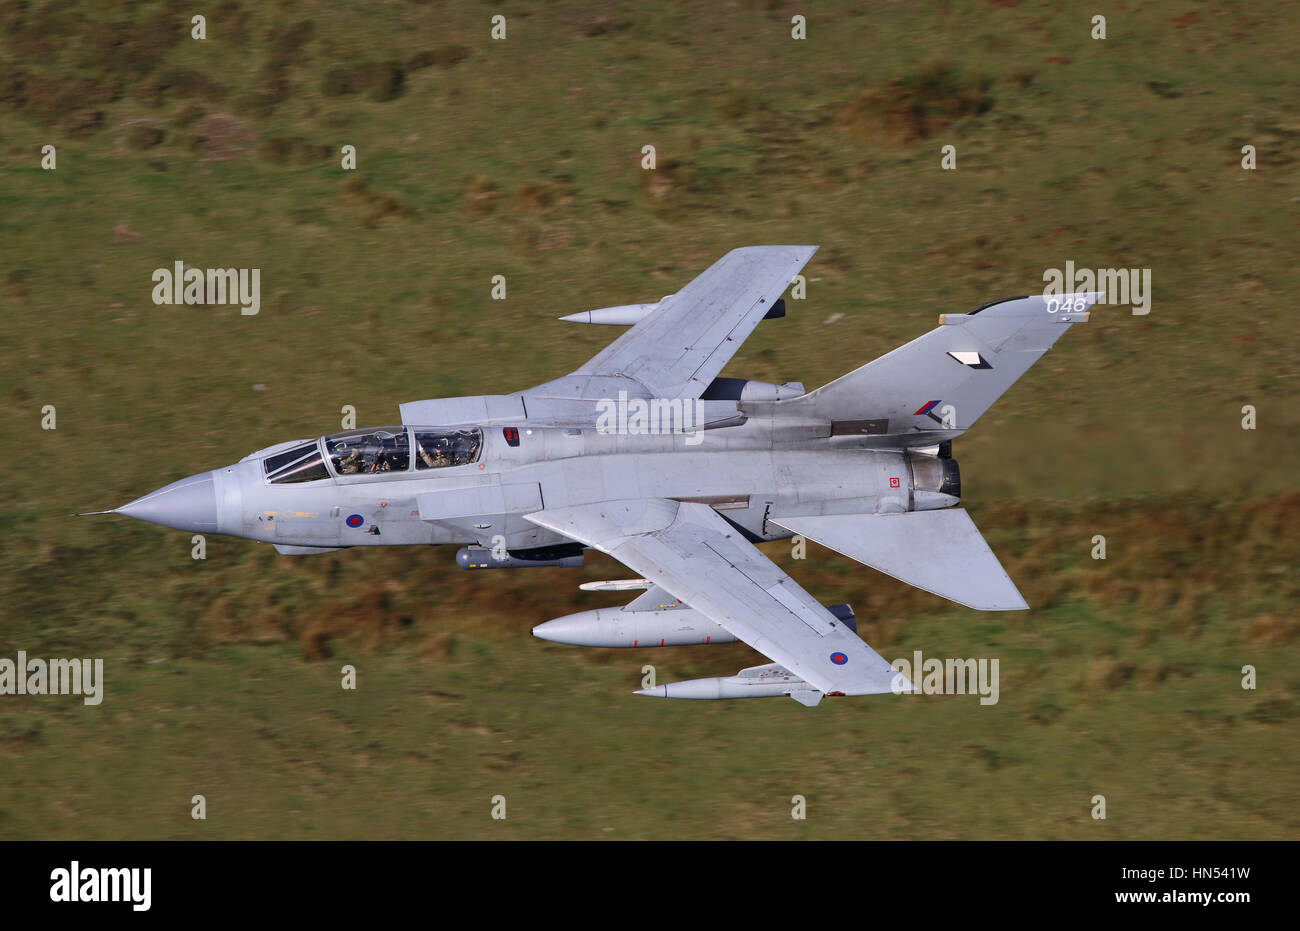 RAF Tornado GR4 aeromobili su un basso livello di esercizio di volo in Galles, Regno Unito, novembre 2016. Foto Stock